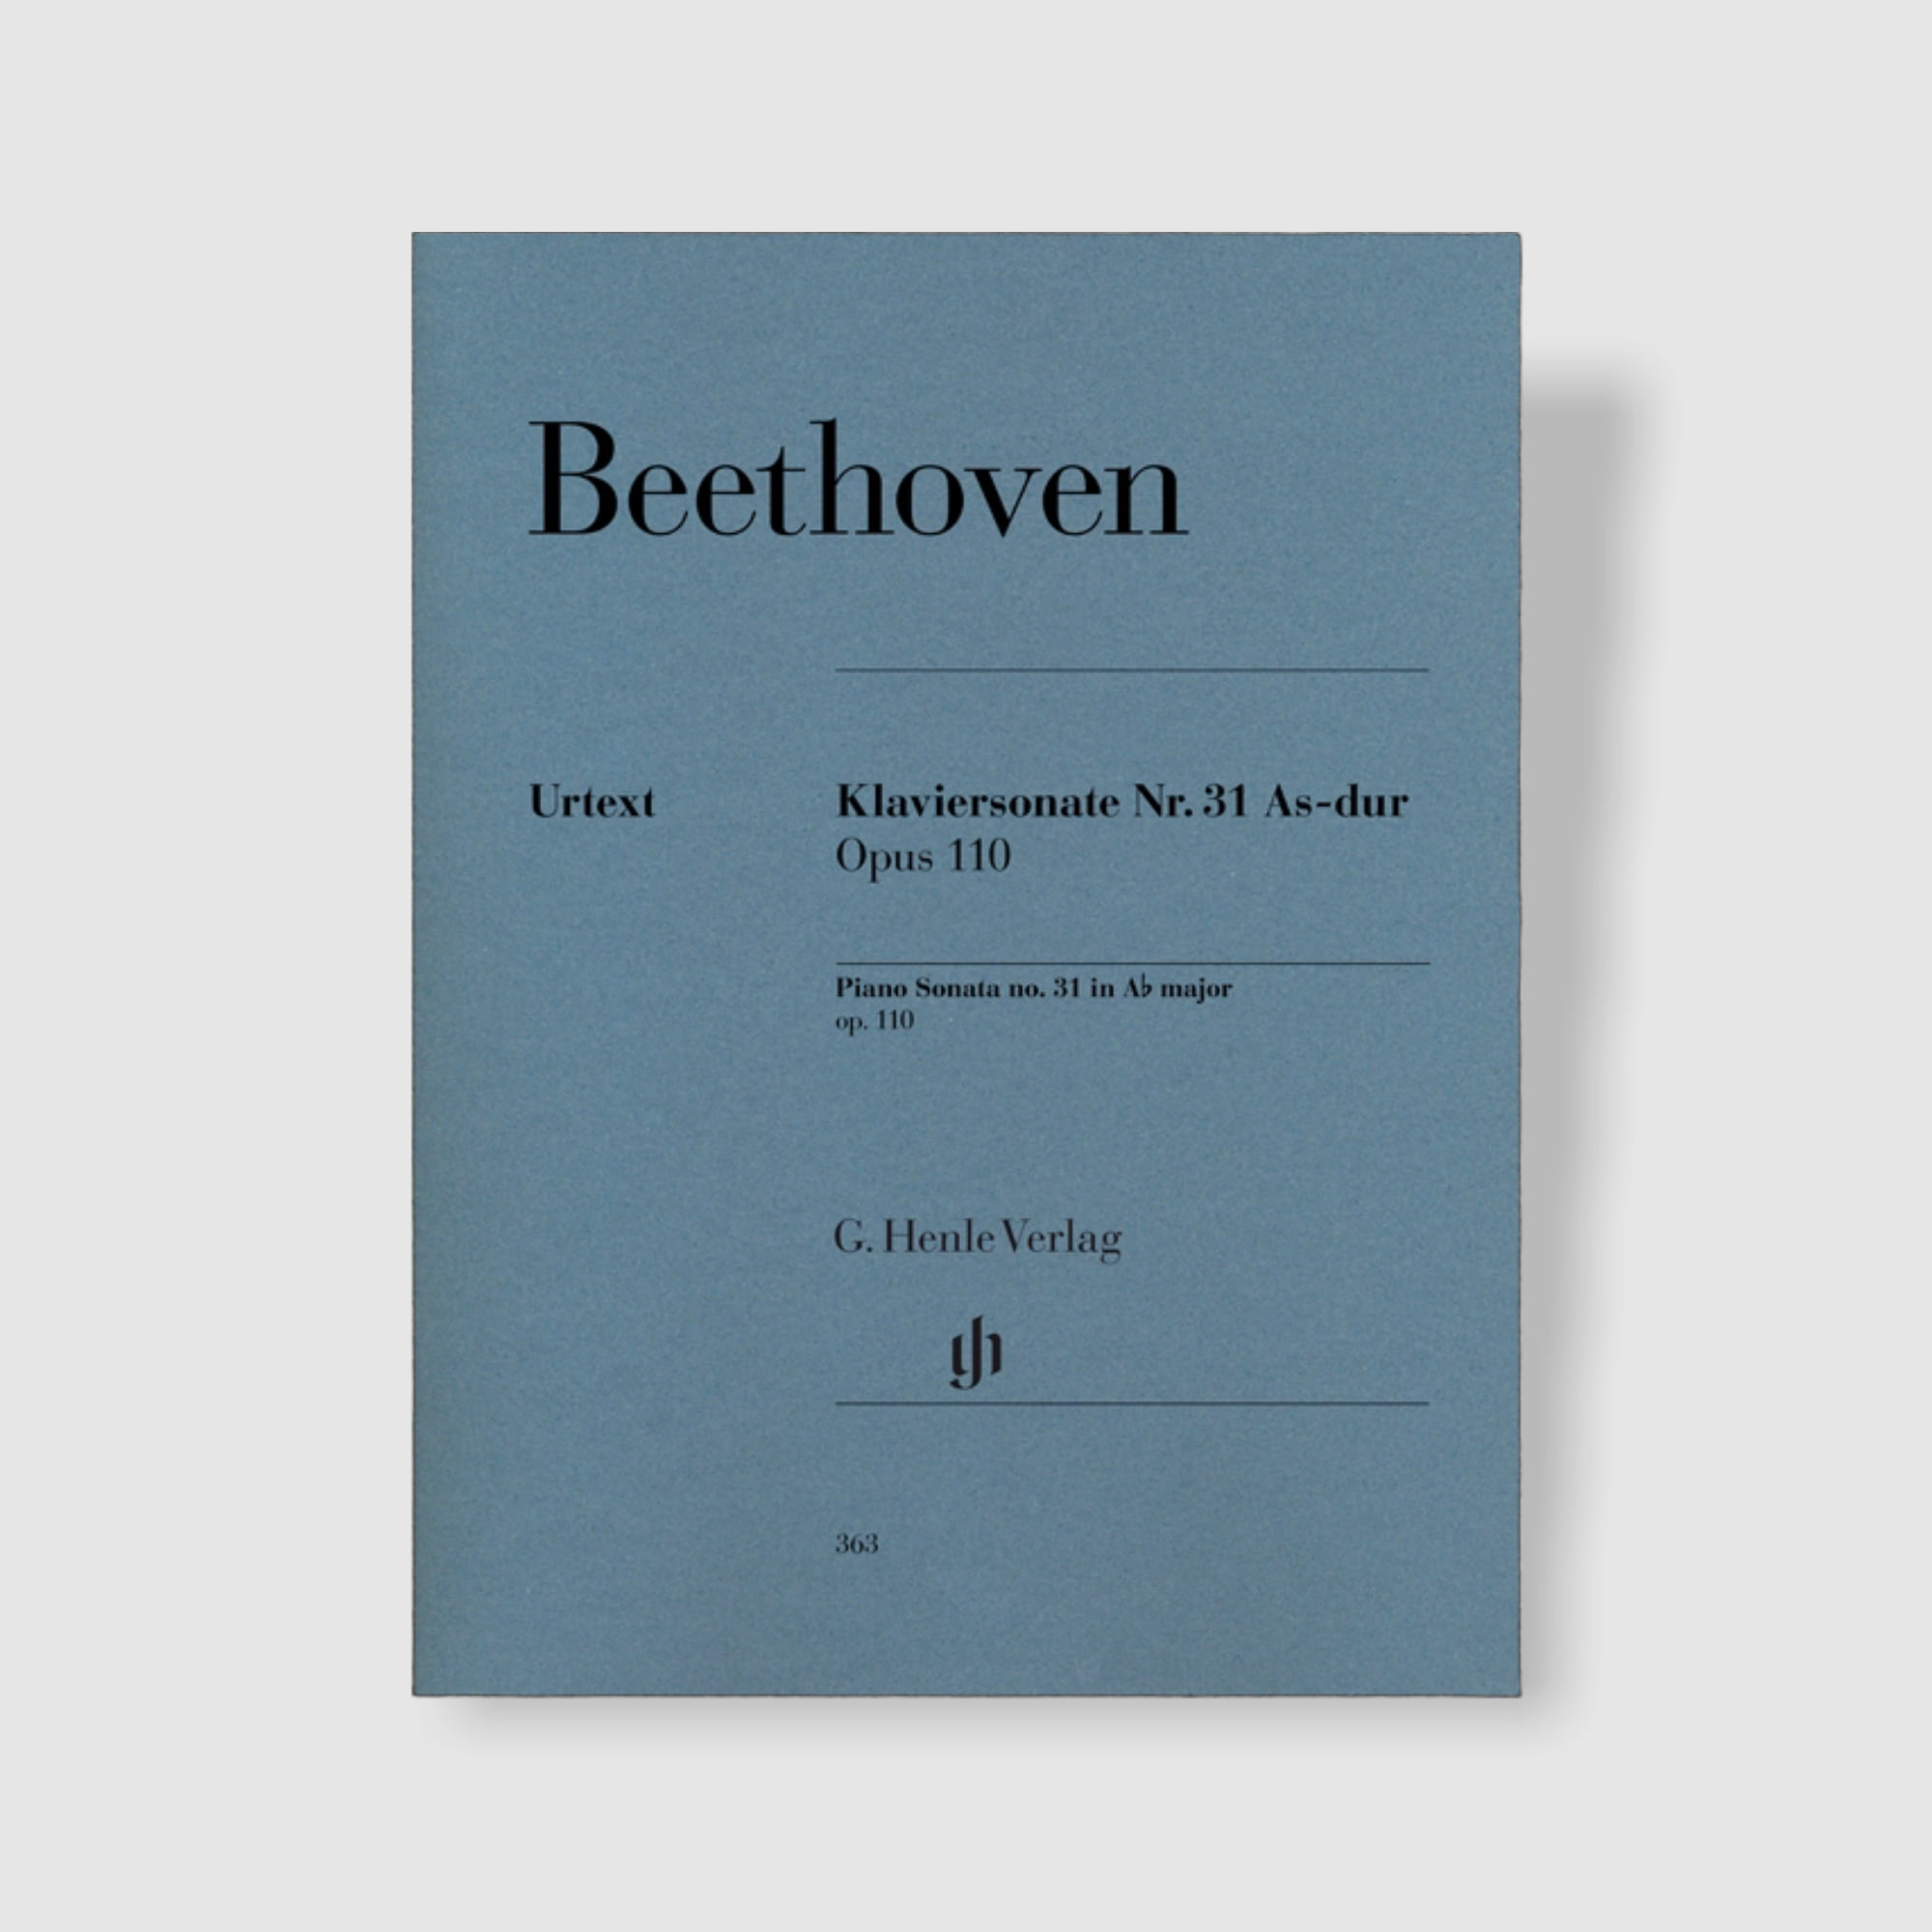 베토벤 피아노 소나타 No. 31 in A flat Major, Op. 110